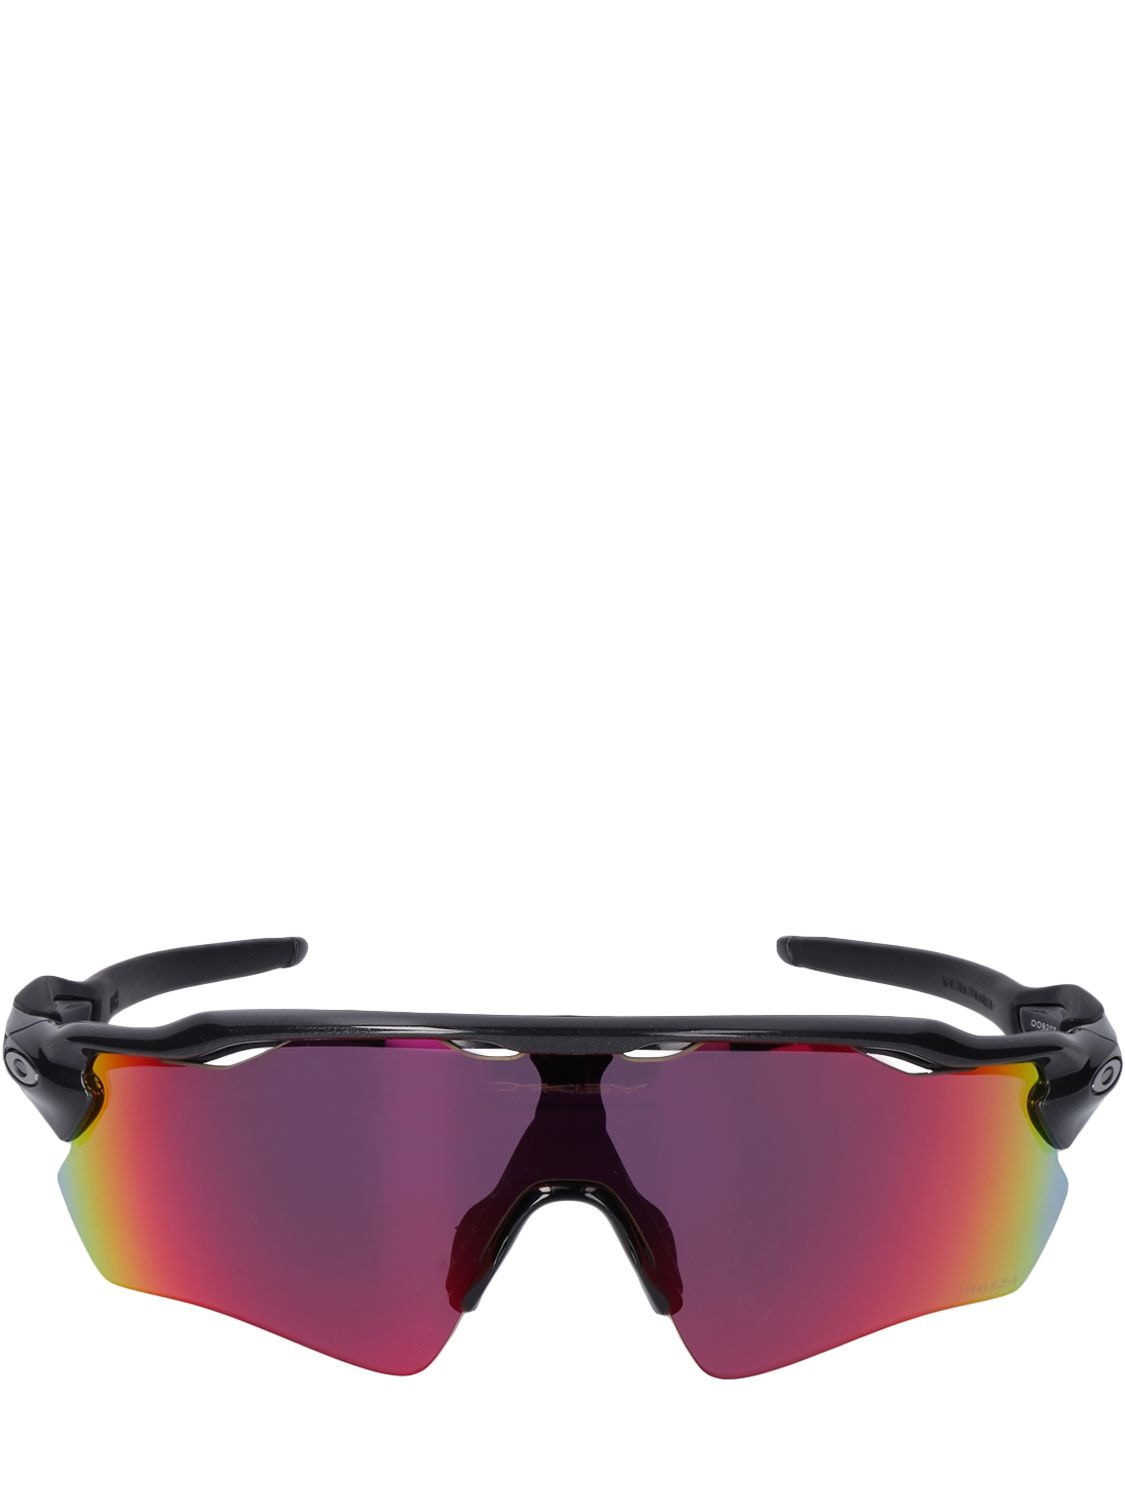 Oakley Radar Ev Path Prizm Mask Sunglasses In Black,multi